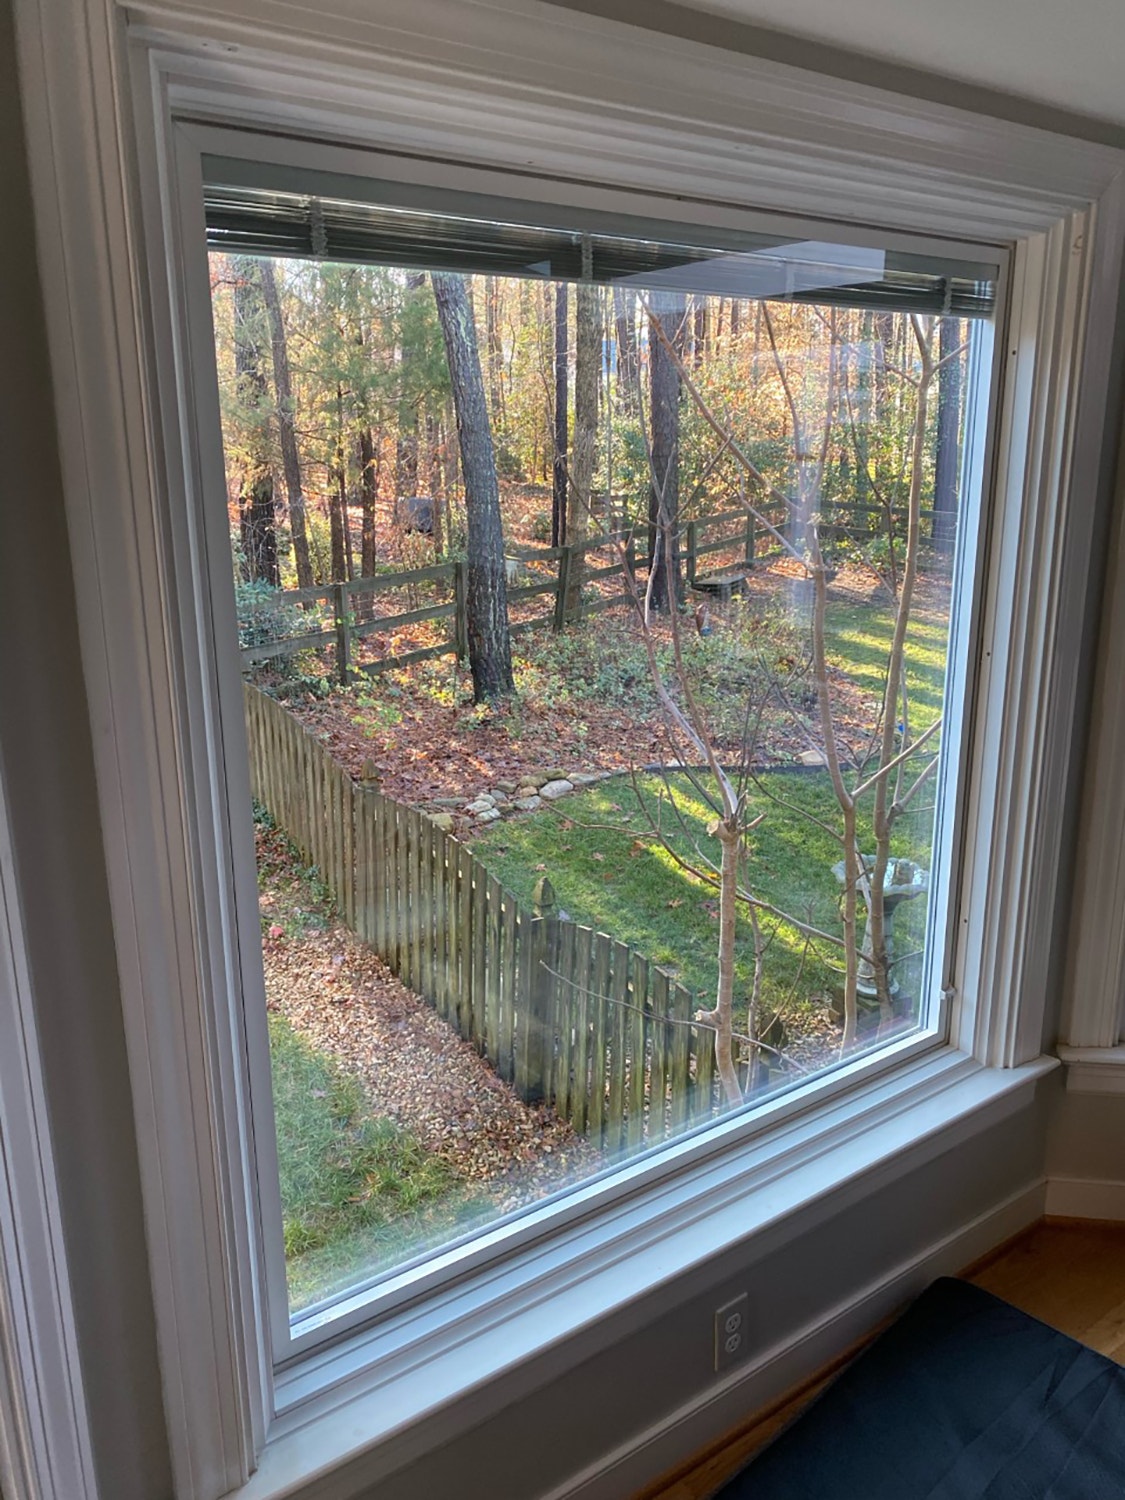 Fixed window overlooks Henrico backyard